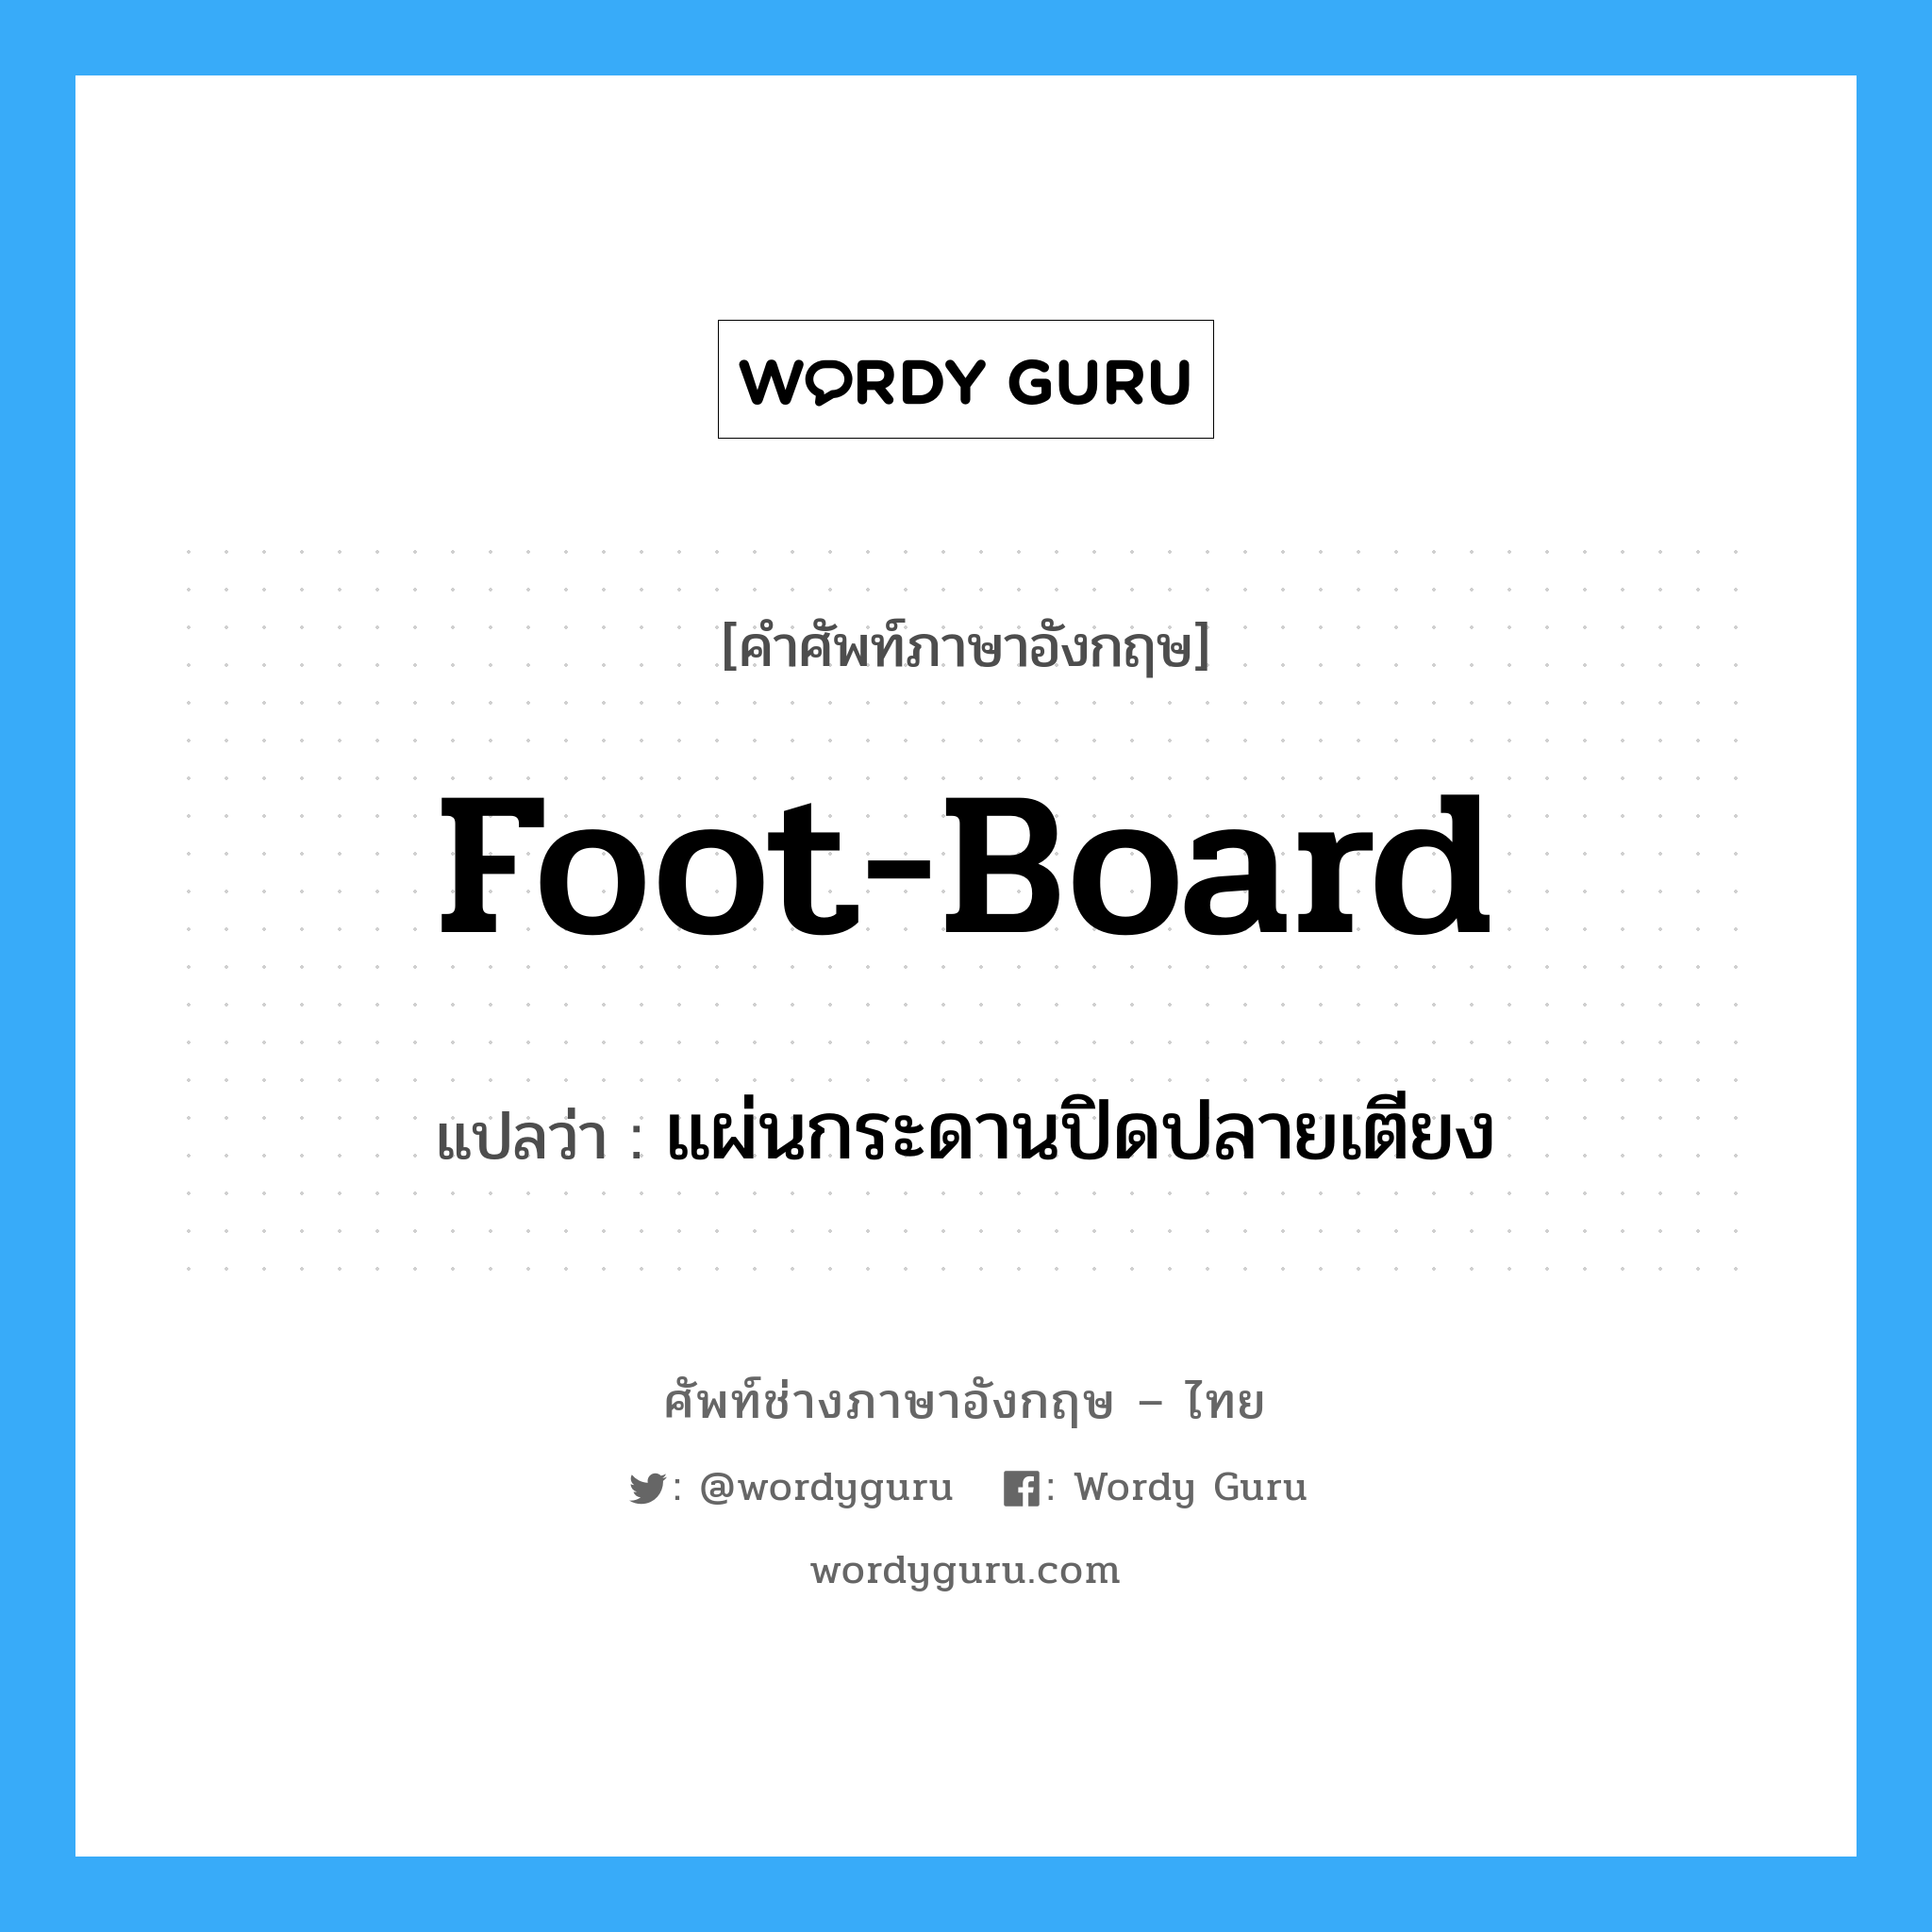 foot-board แปลว่า?, คำศัพท์ช่างภาษาอังกฤษ - ไทย foot-board คำศัพท์ภาษาอังกฤษ foot-board แปลว่า แผ่นกระดานปิดปลายเตียง